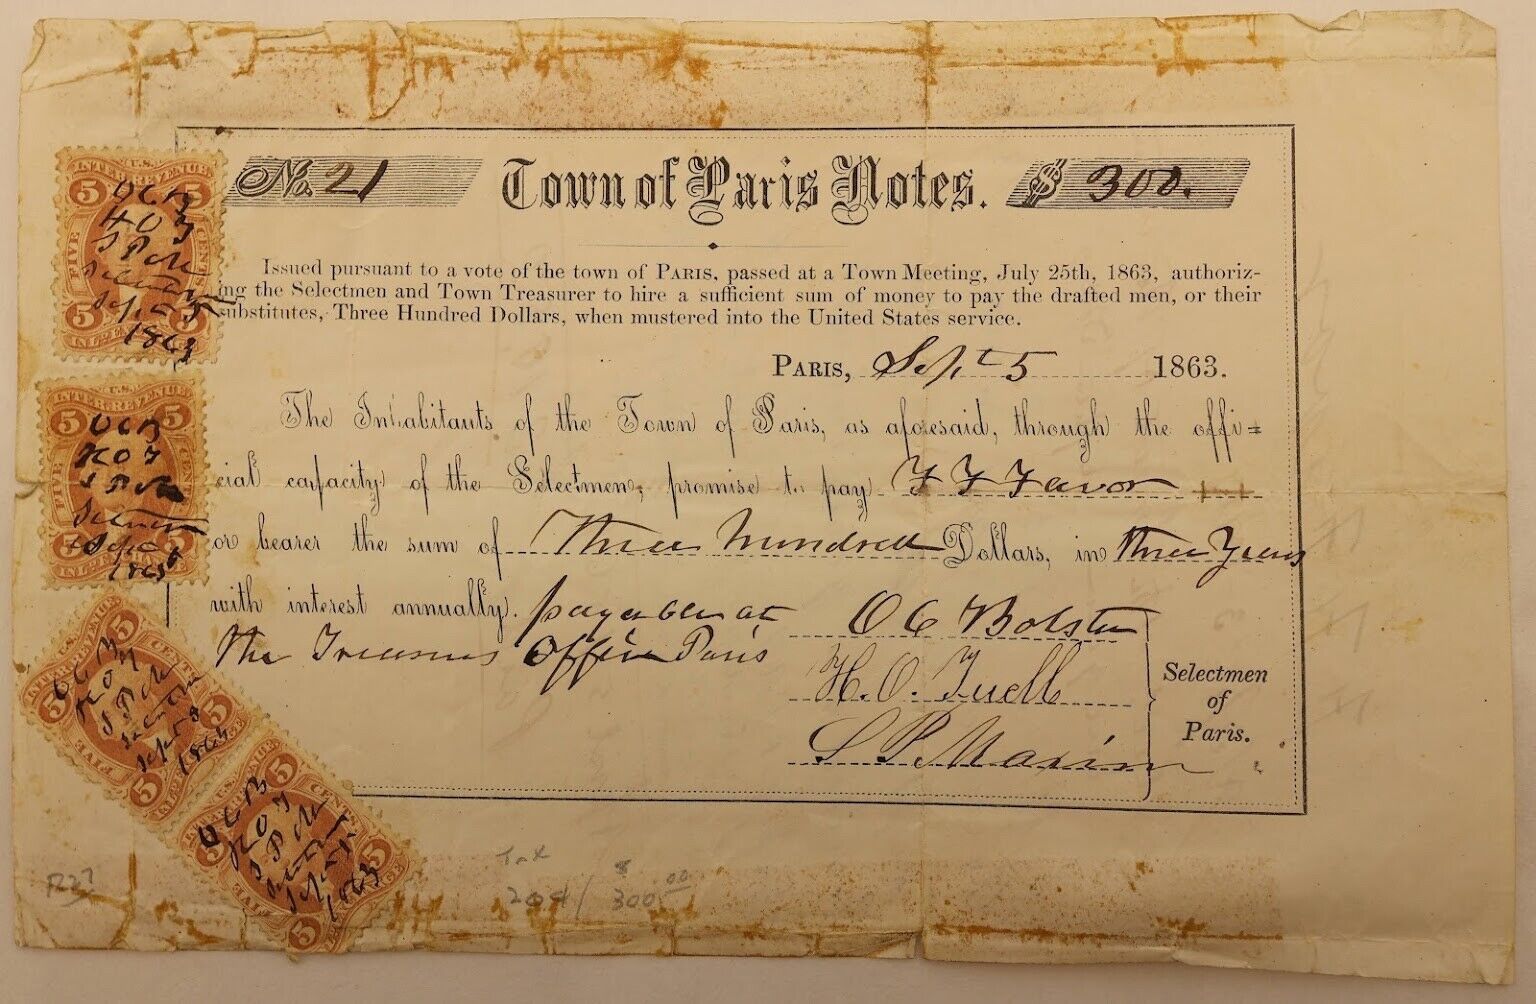 Civil War Soldier $300 Payment Voucher document Town of Paris F.F. Favor, 1863